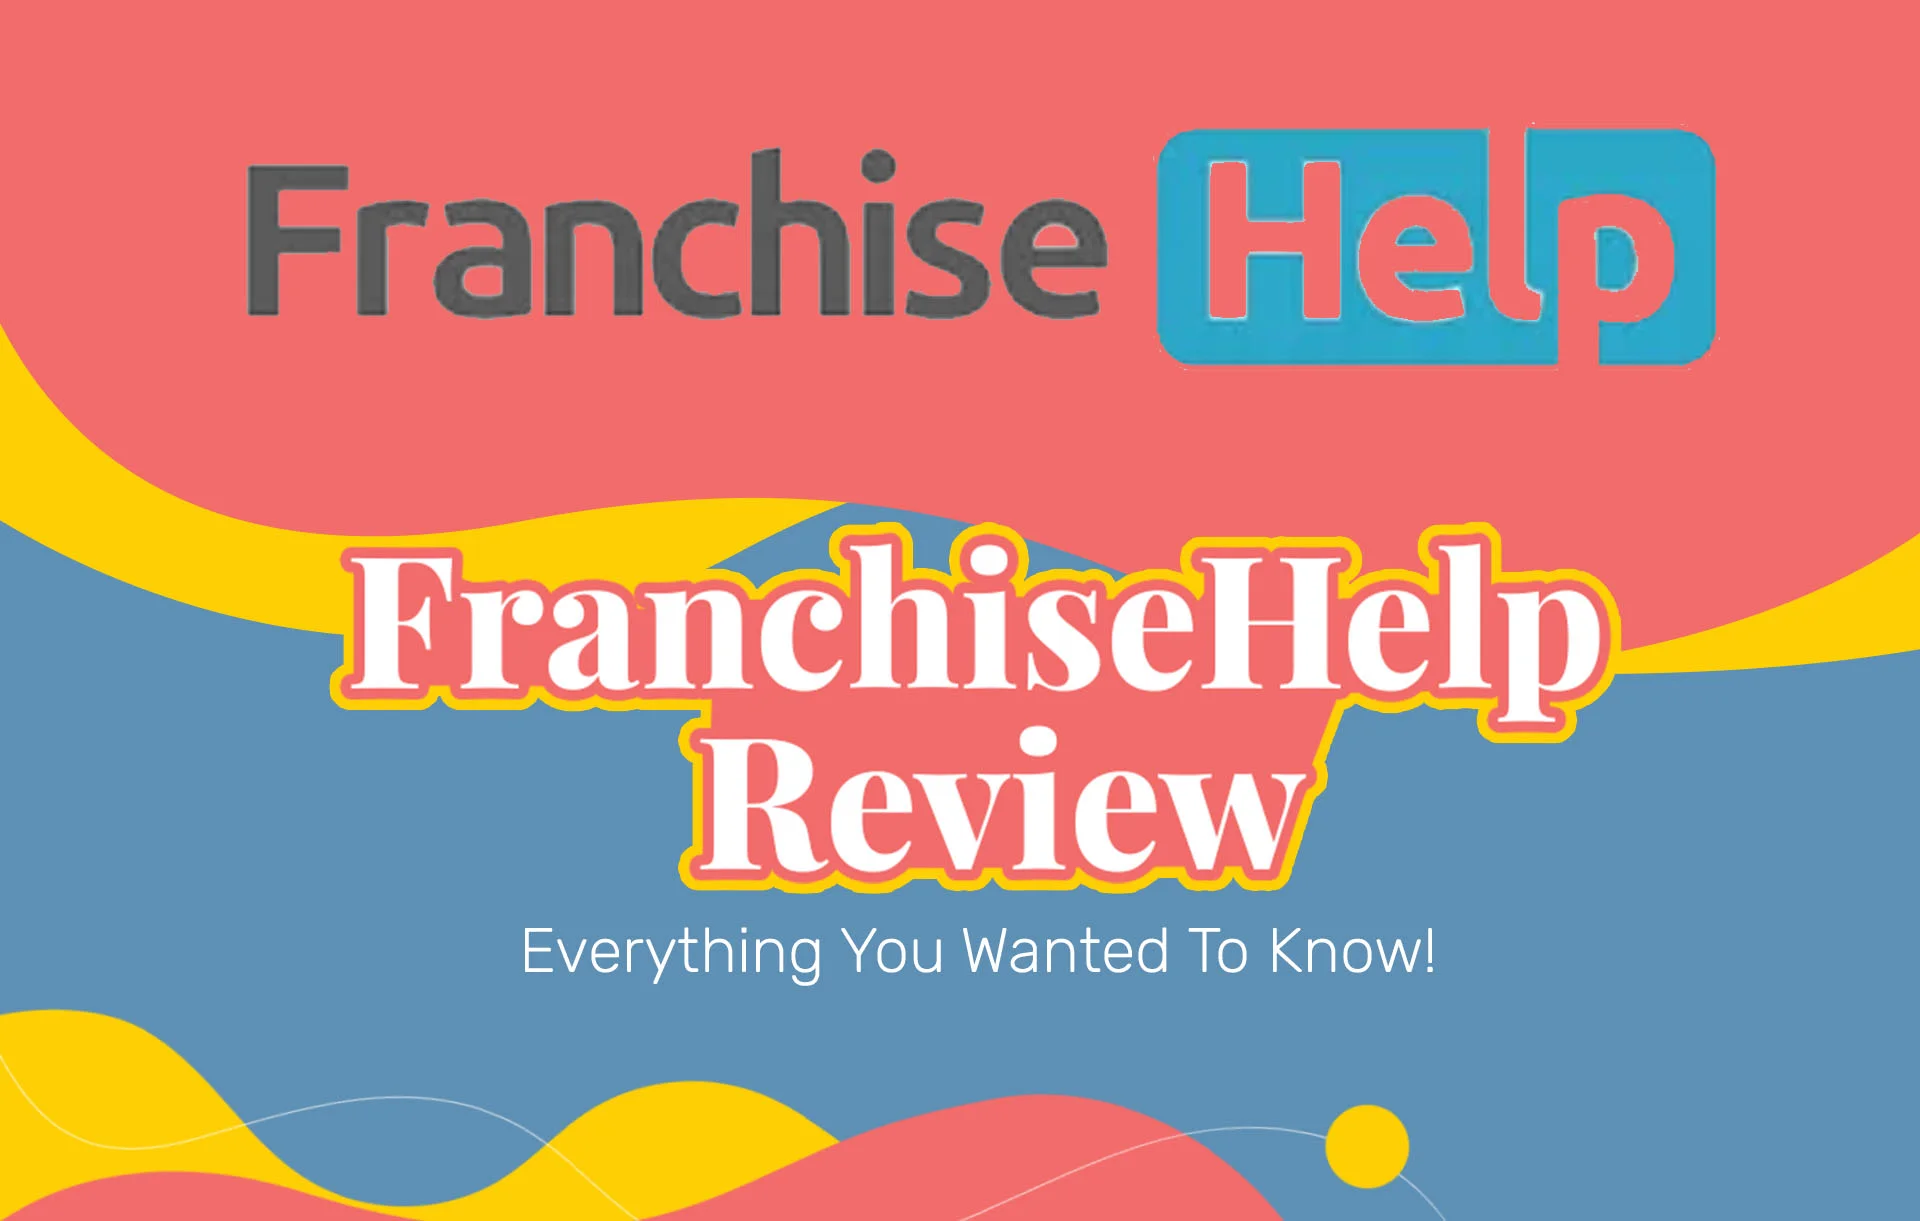 FranchiseHelp Reviews: Best Business Course?